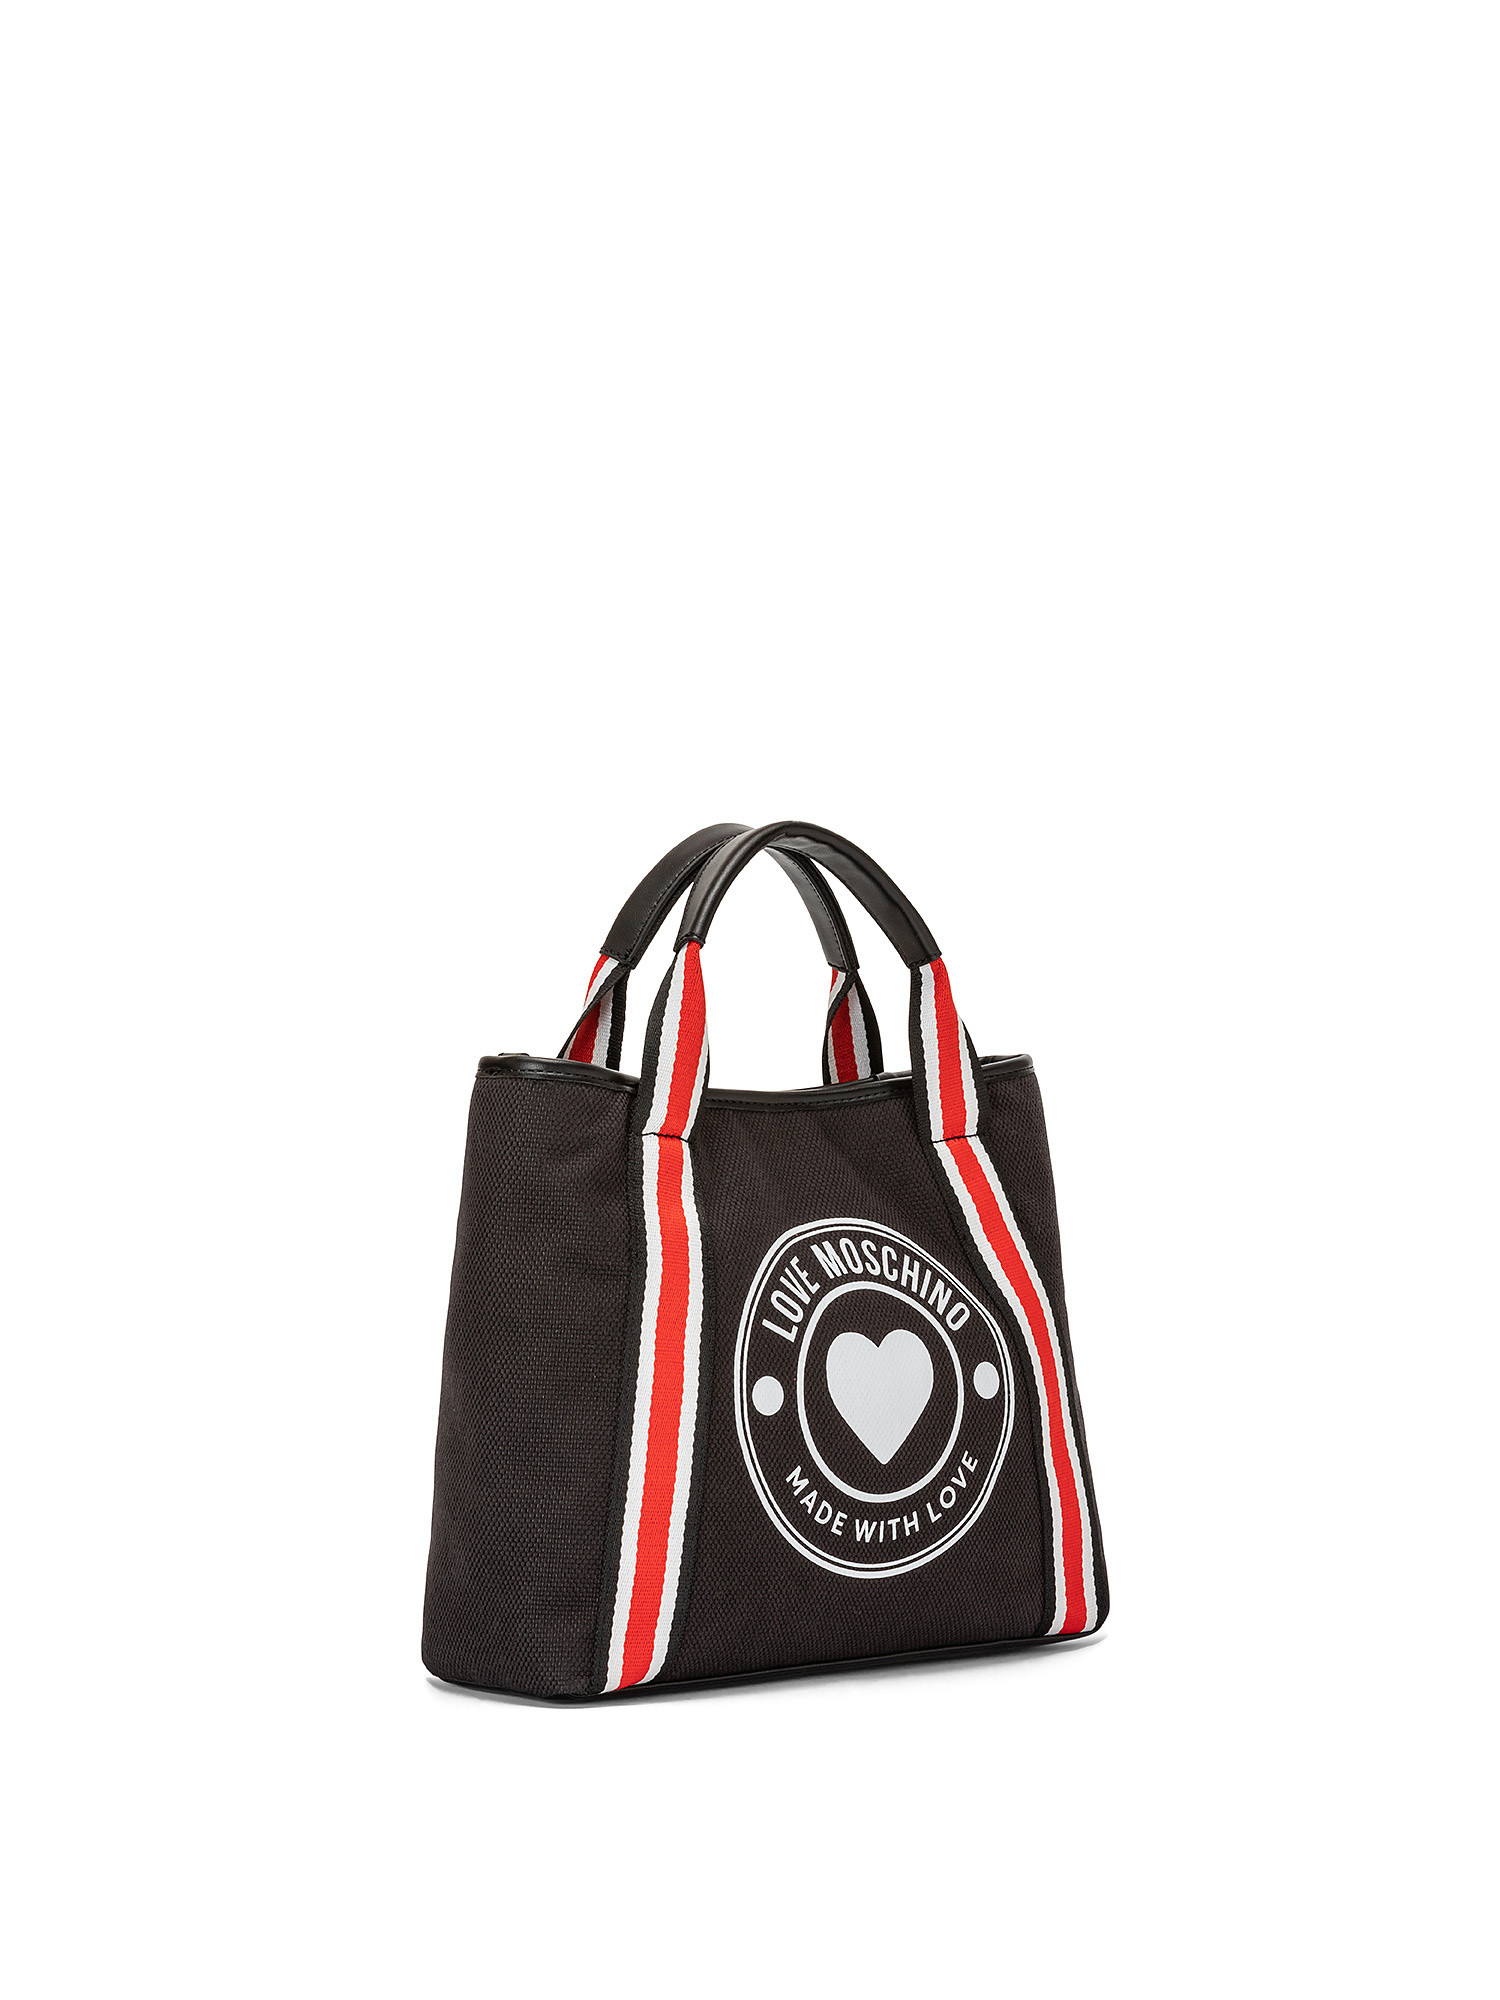 Handbag with logo, Black, large image number 1